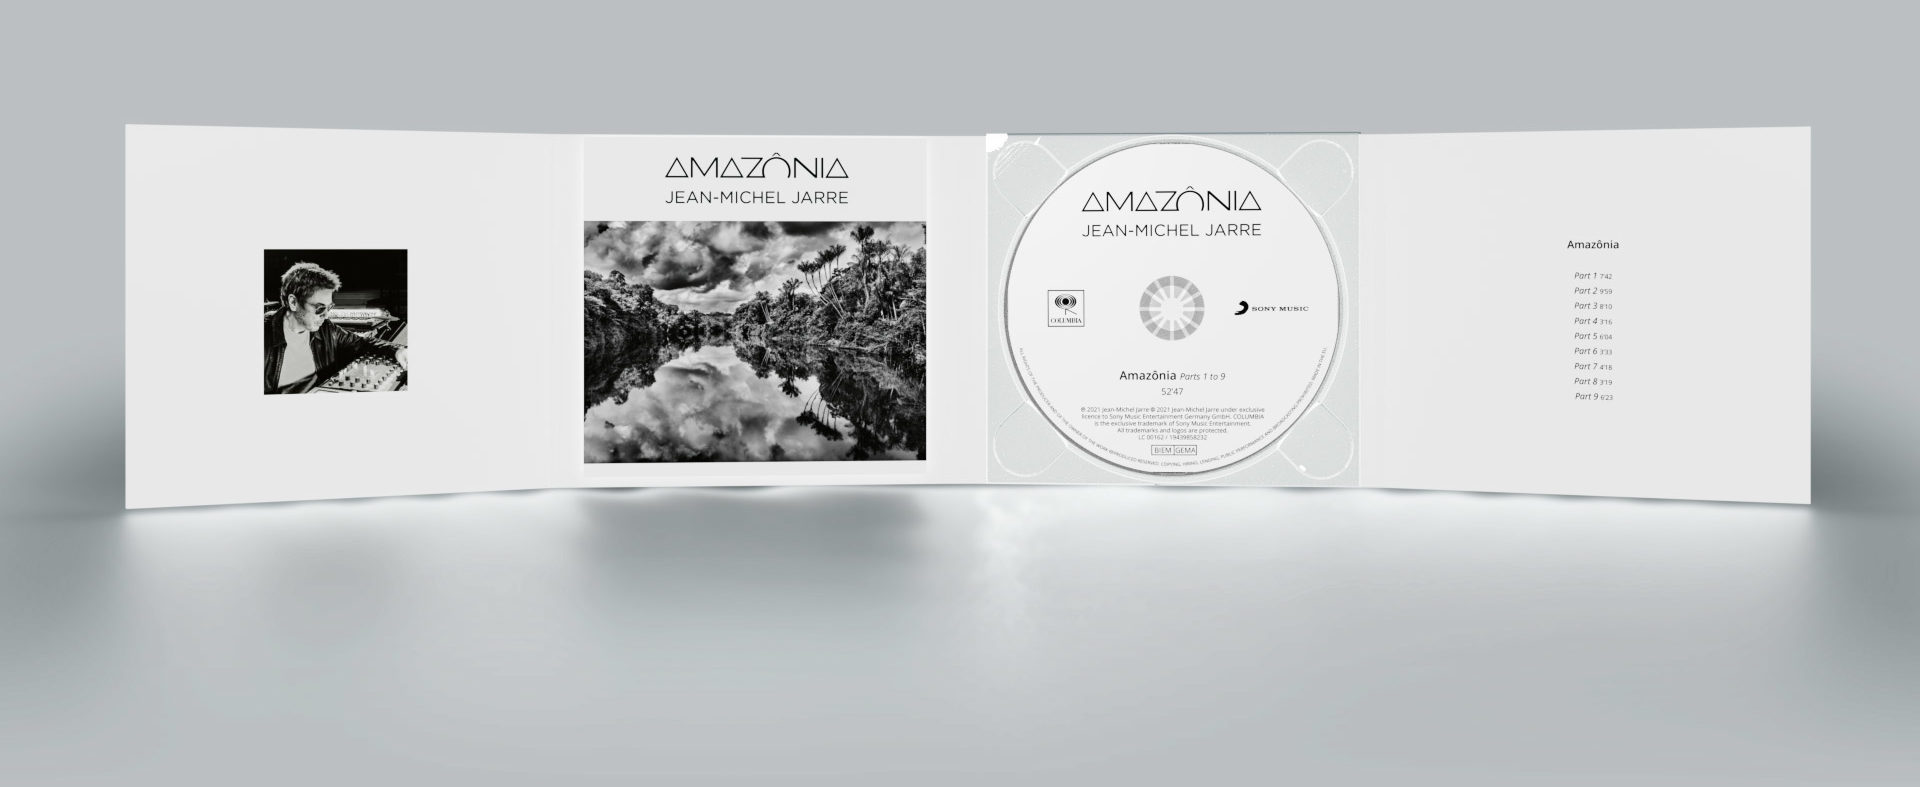 Amazônia ya está disponible en CD-Audio, con versiones binaural y surround descargables